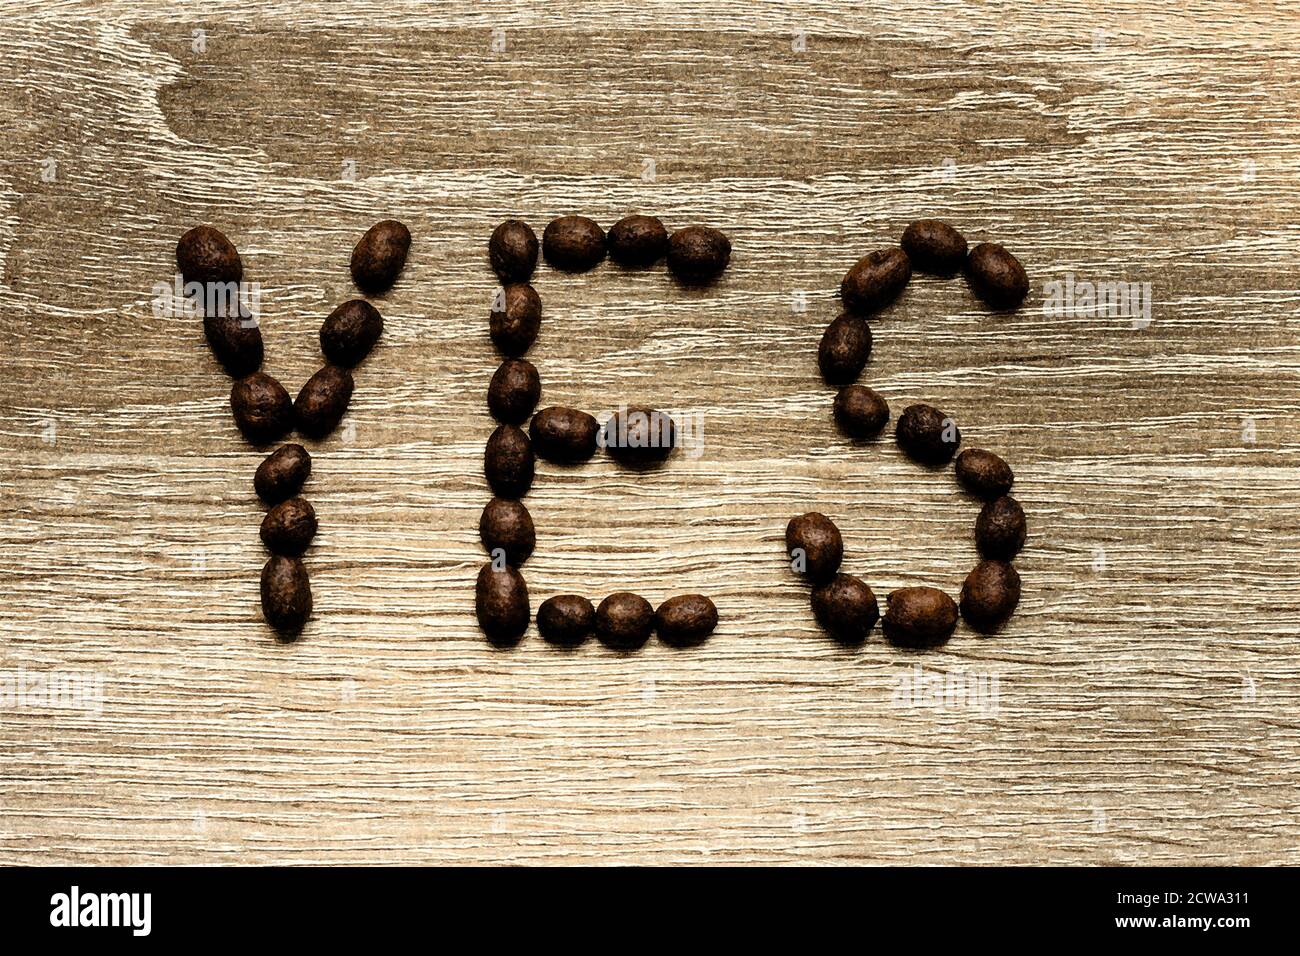 Das Wort 'Ja' wurde mit gerösteten arabica-Kaffeebohnen auf einem Holztisch ausgelegt. Stockfoto